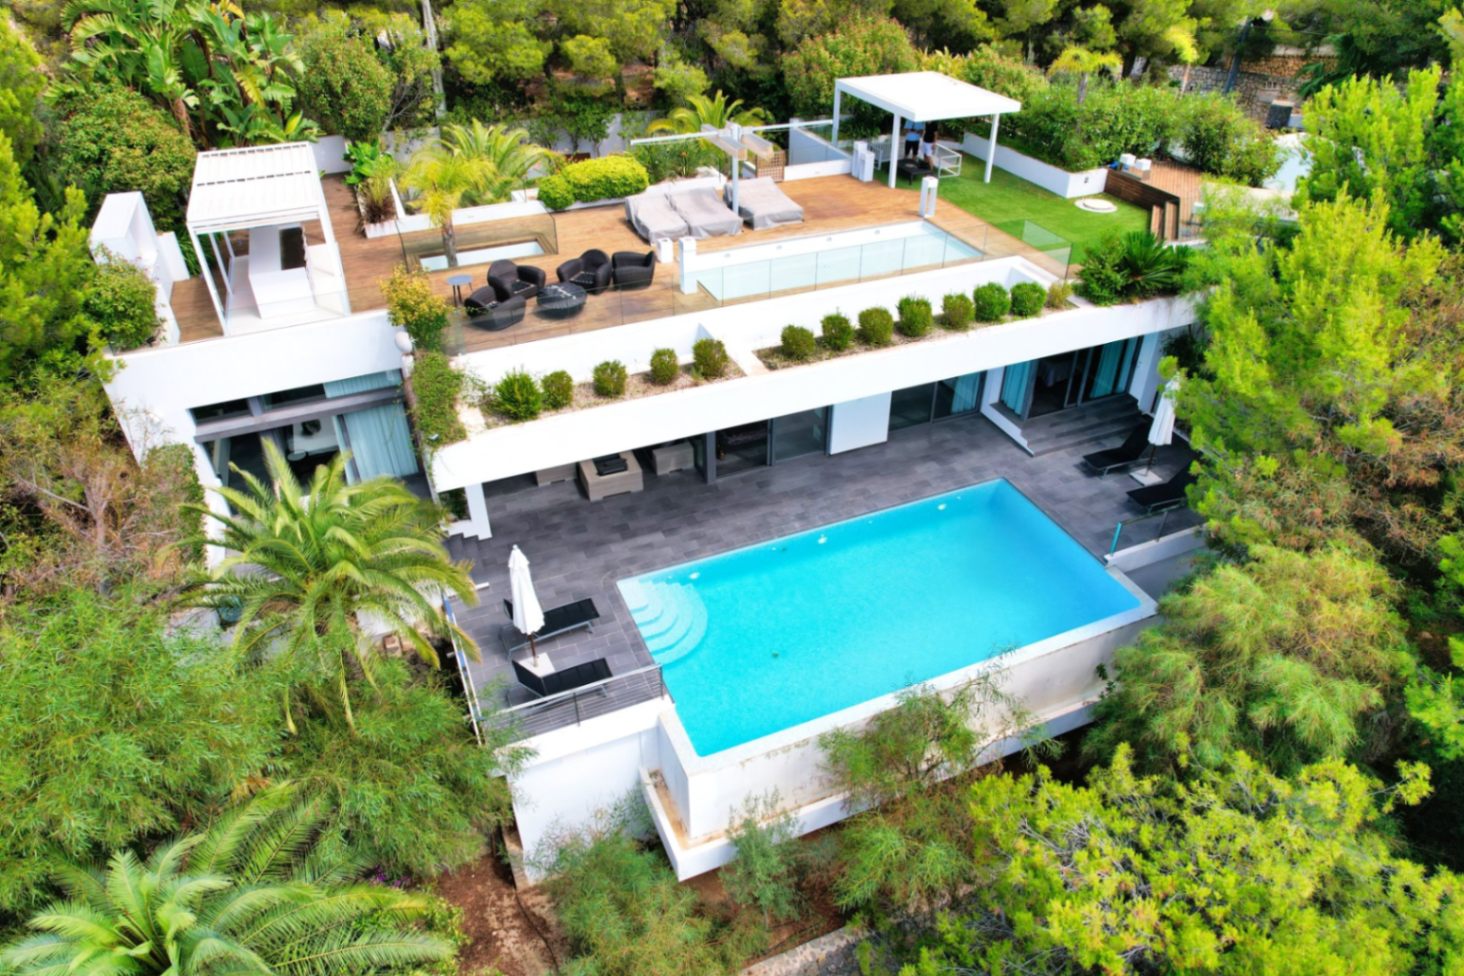 Stylish and modern luxury villa with panoramic views in Altea La Vella, Costablanca, Alicante